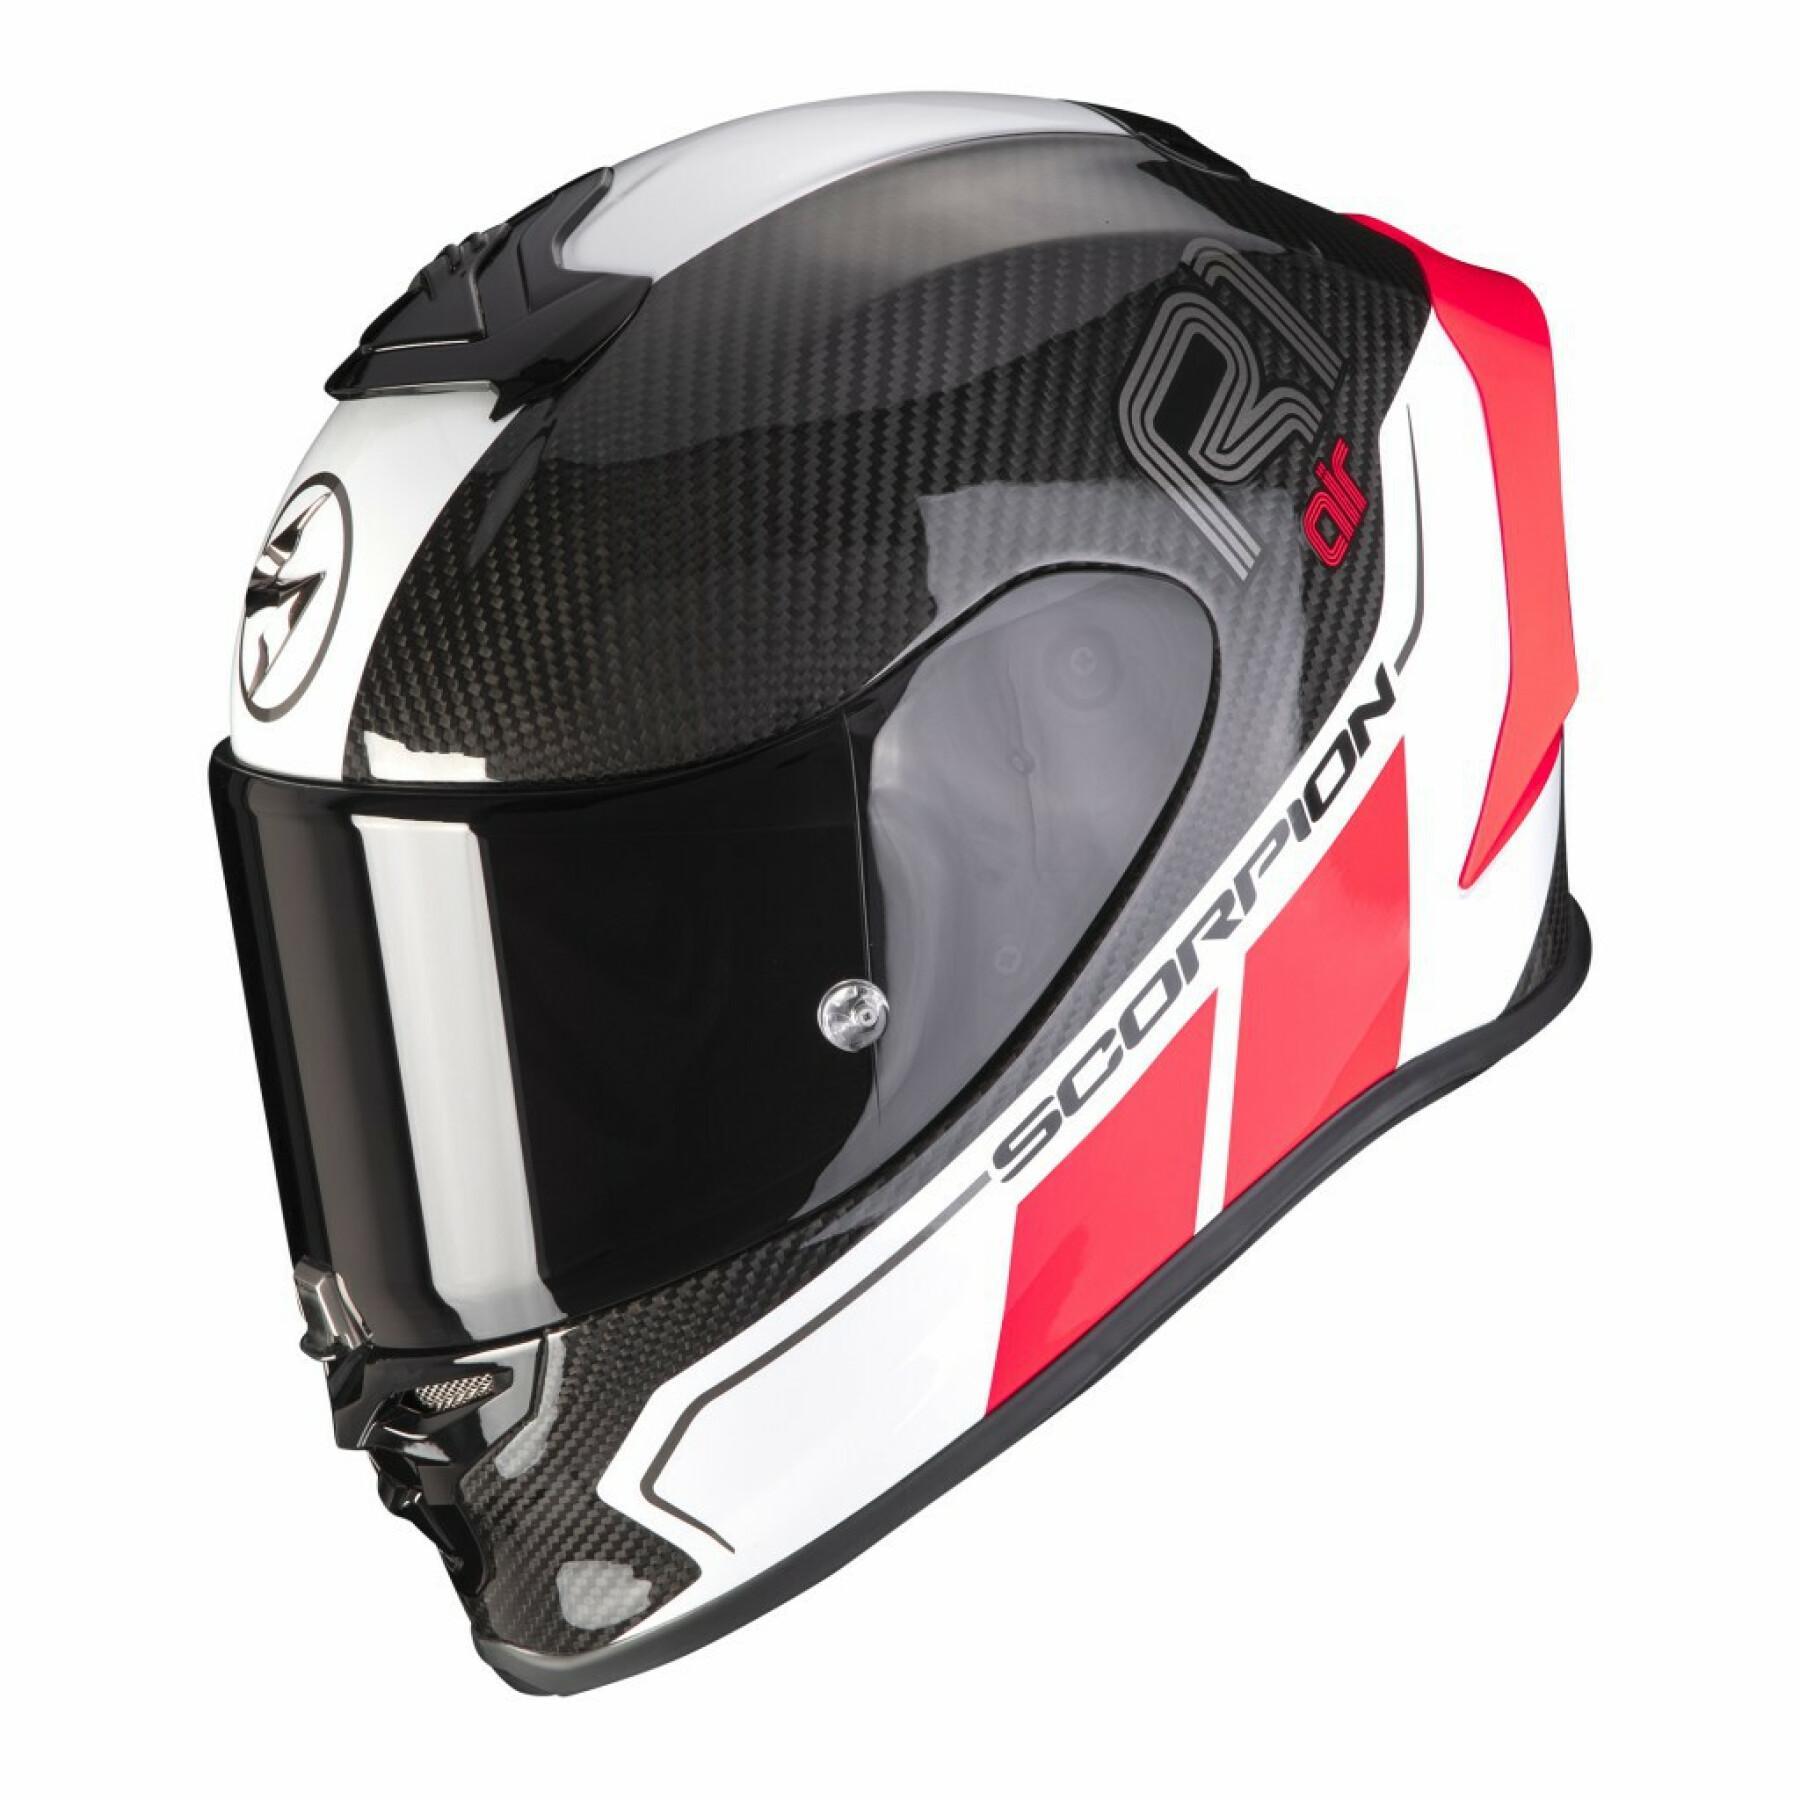 Full face helmet Scorpion Exo-R1 Carbon CORPUS II